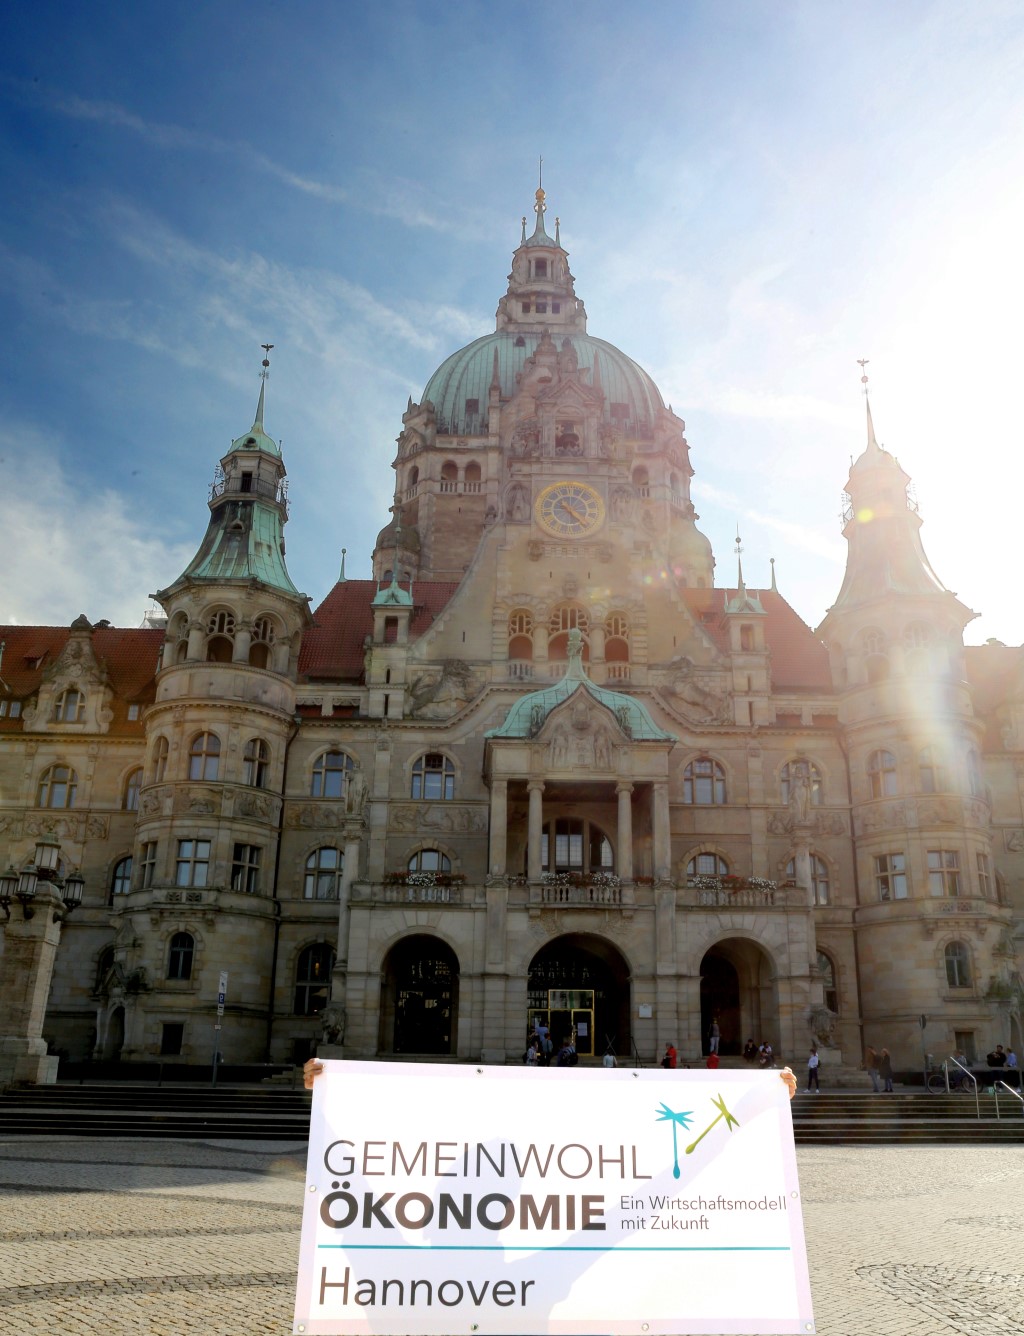 Hannovers Neues Rathaus mit dem Gemeinwohl-Ökonomie-Banner unserer Regionalgruppe im Vordergrund